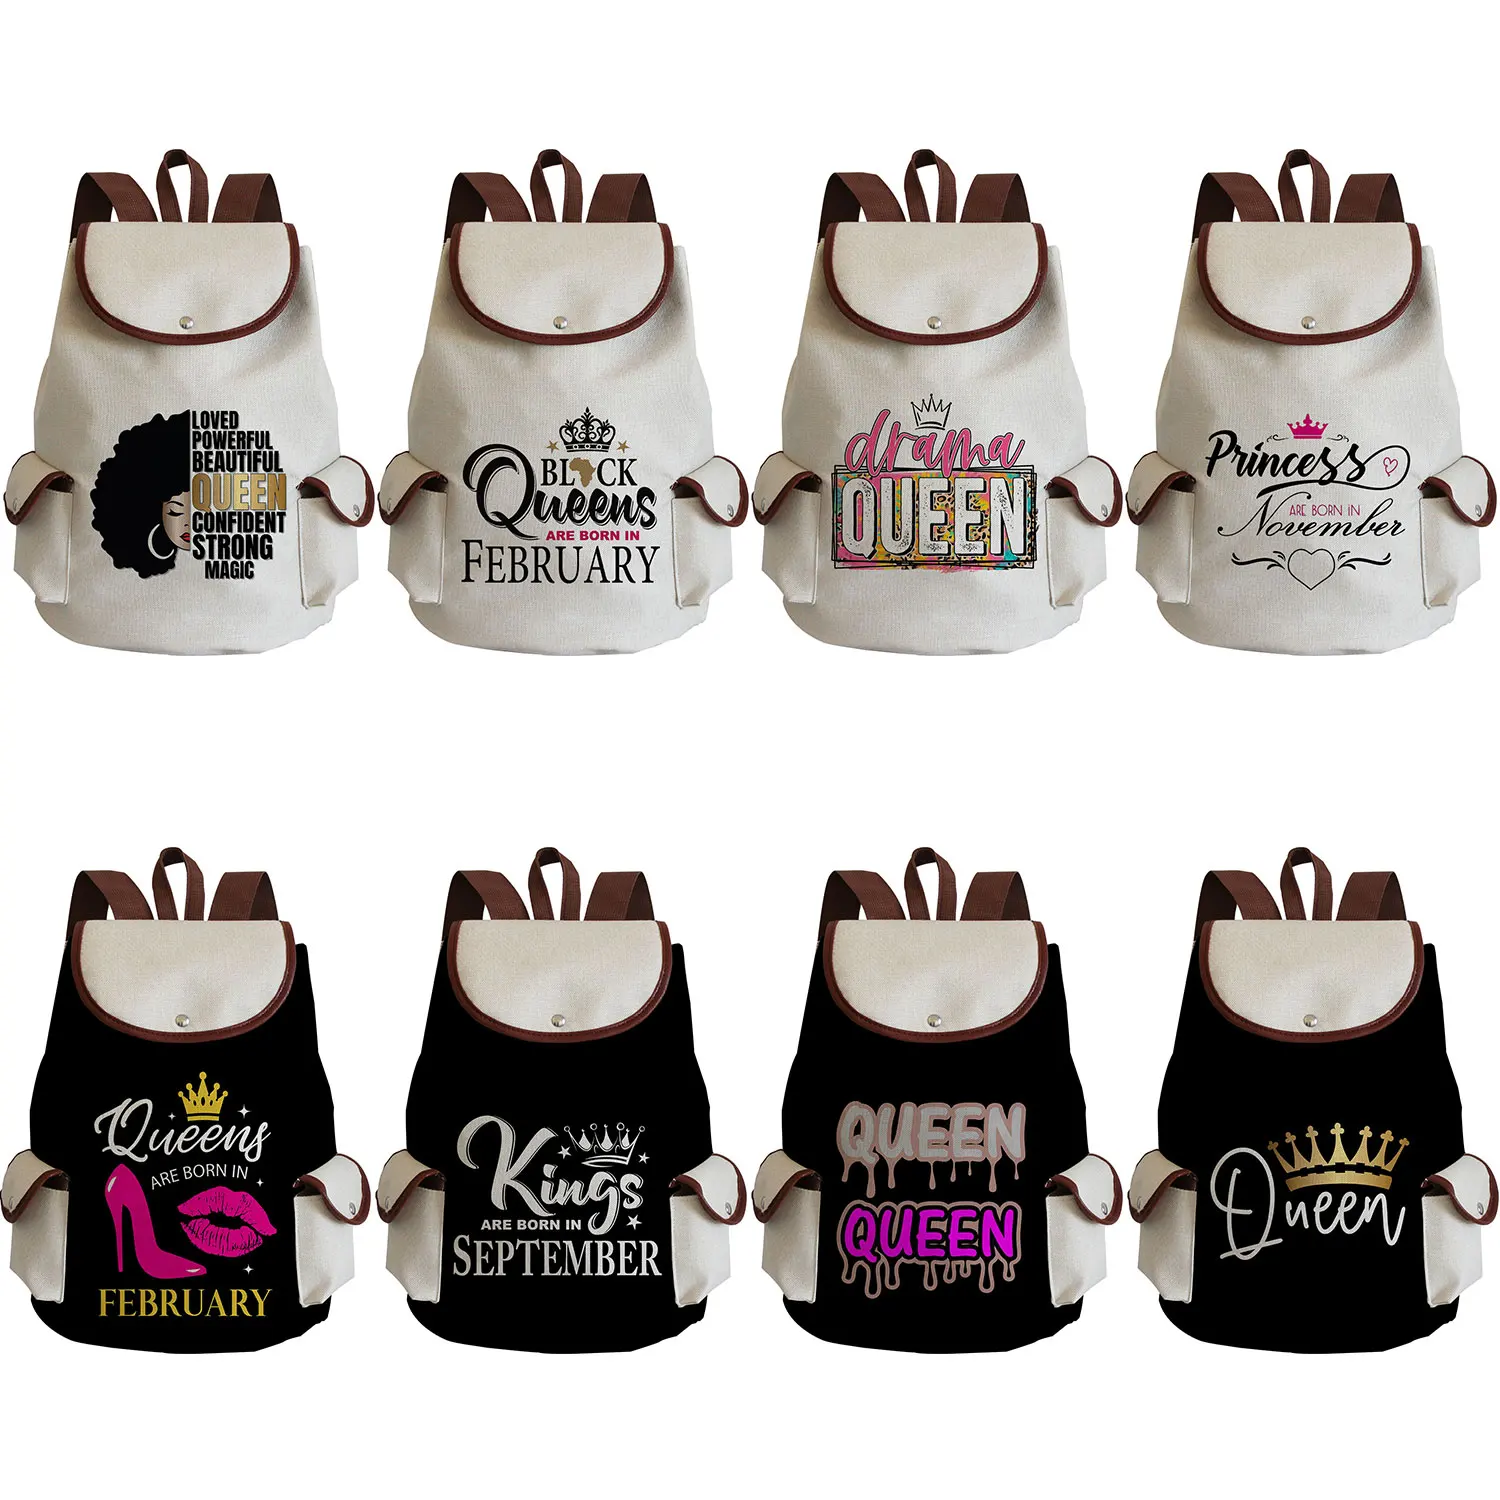 

Рюкзак King And Queen для женщин, модный минималистичный вместительный ранец с надписью «King And Queen» на шнурке, рюкзак для студентов